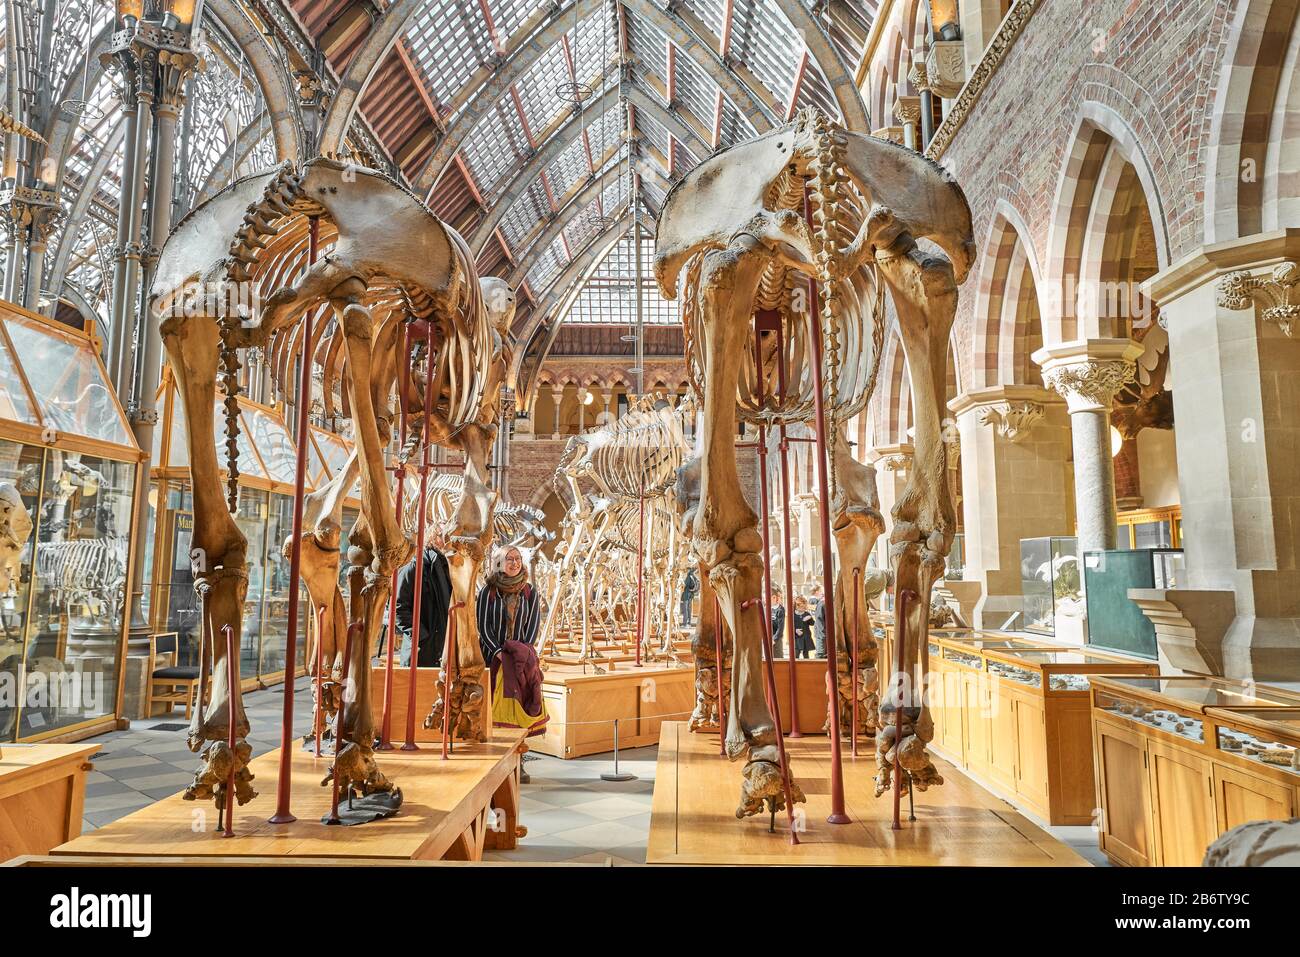 Expositions de squelettes d'éléphants d'Asie au rez-de-chaussée au musée d'histoire naturelle de l'université d'Oxford, en Angleterre. Banque D'Images